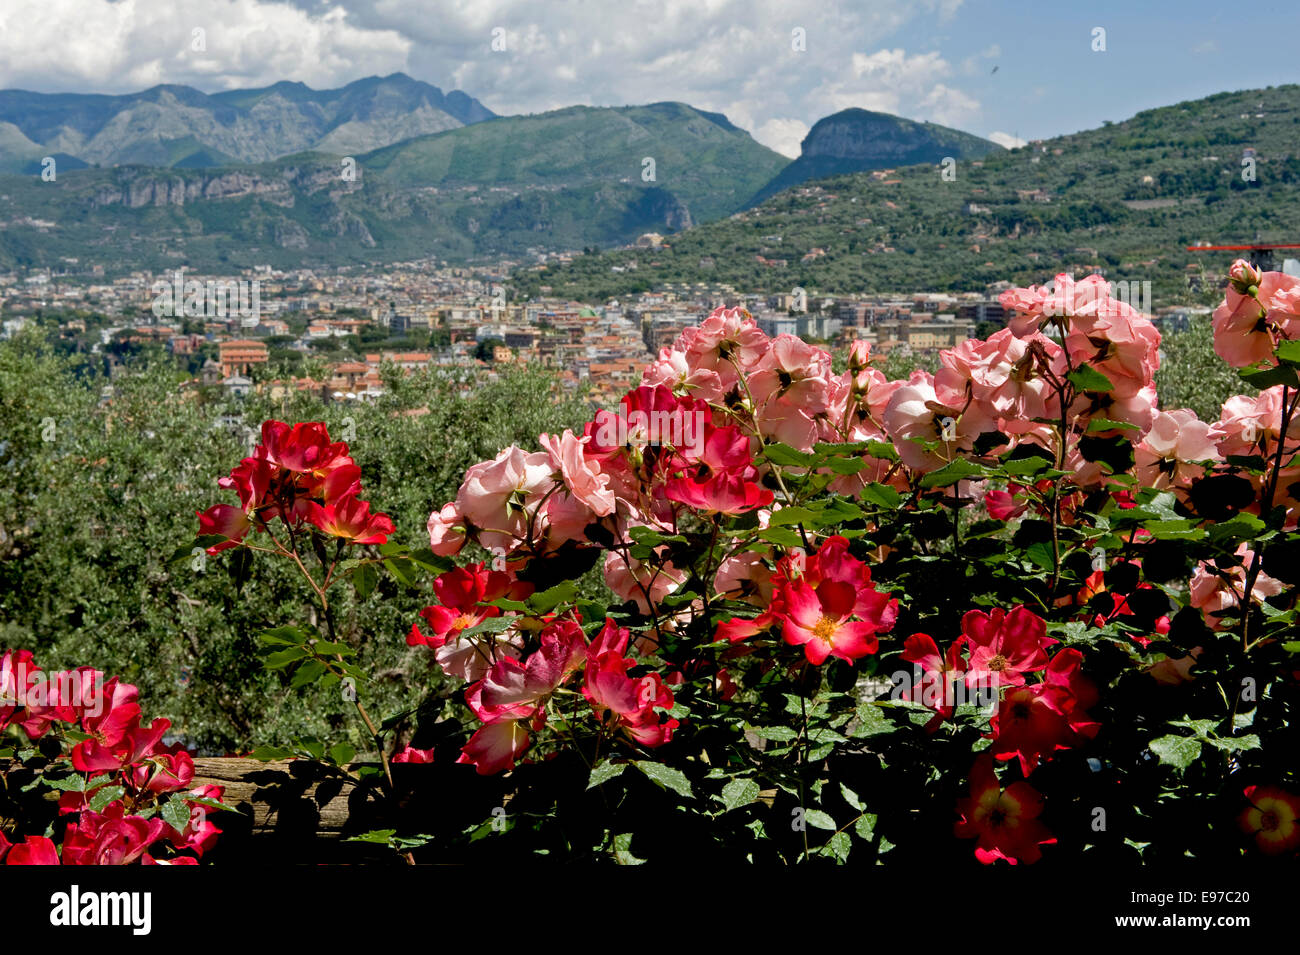 Rose rampicanti con pieno rosso e rosa fiorisce su una staccionata di legno in un giardino sul mare del Golfo di Napoli nei pressi di Sorrento in Italia, può Foto Stock